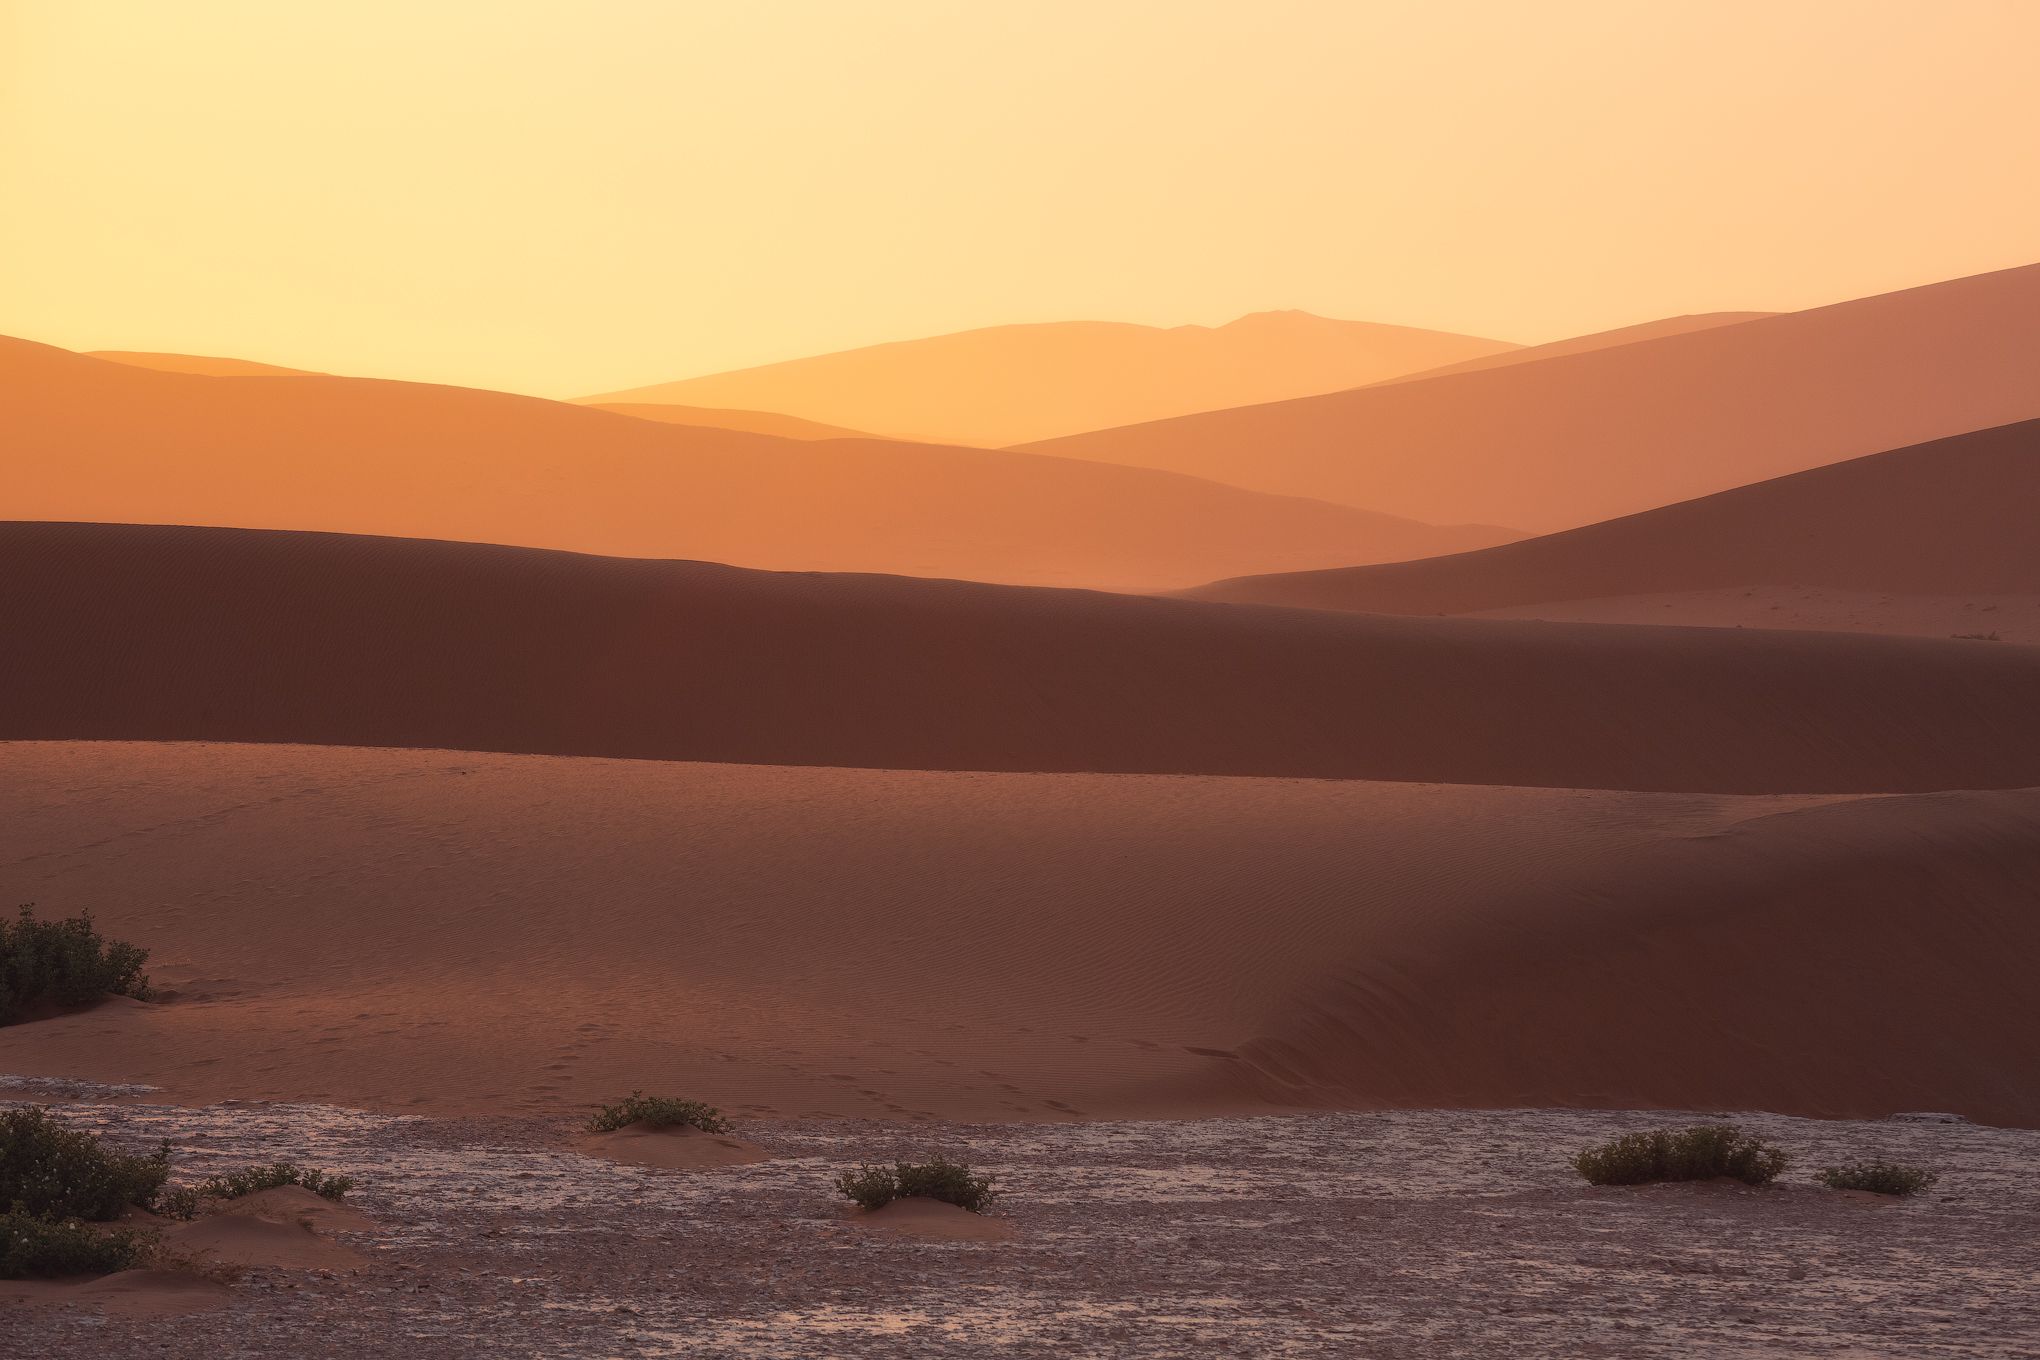 #дюны #намибия #африка #рассвет #воздушная перспектива #цвета #нежность #дедвлей #Deadvlei #ffrica #duna #namibia #sunrise, Наталия Деркач